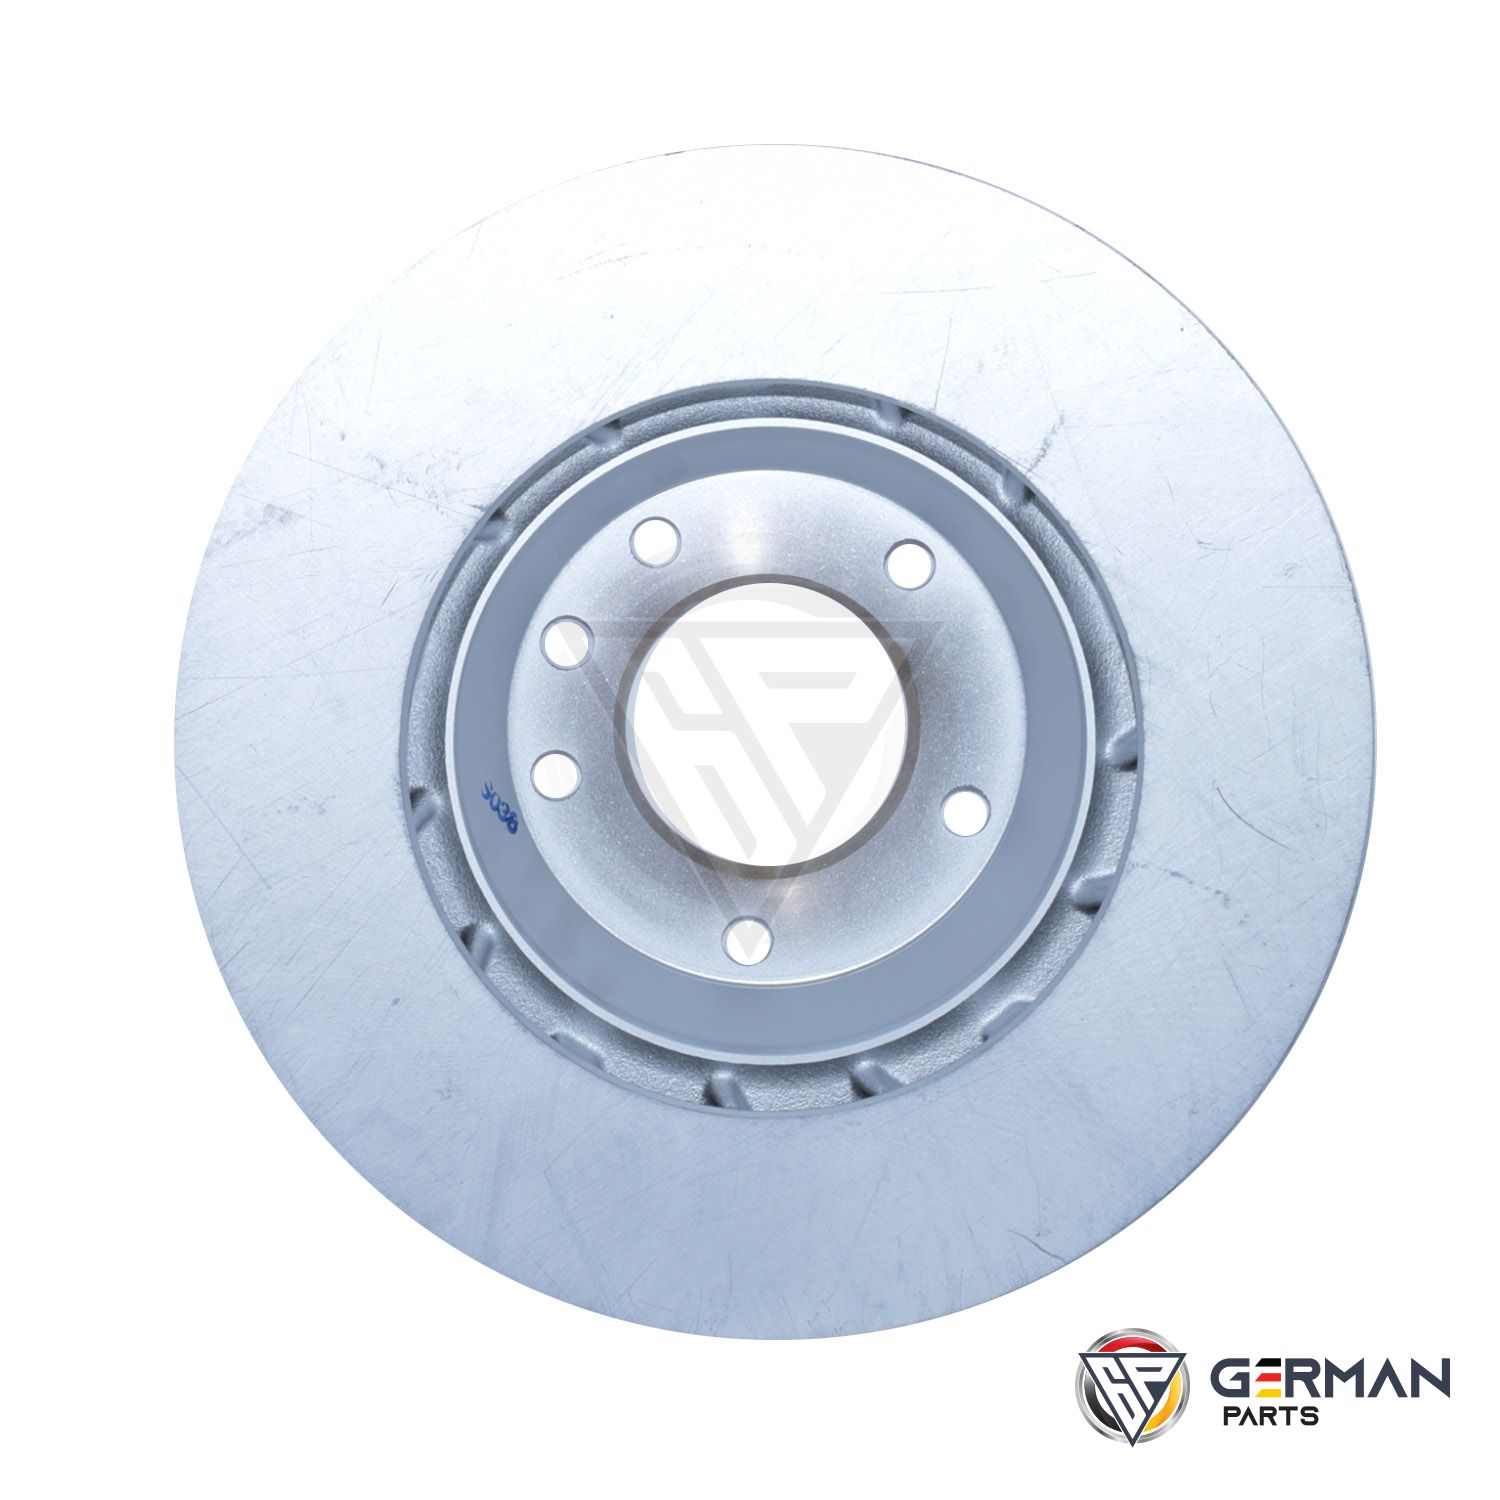 Buy Audi Volkswagen Front Brake Disc 7L8615301 - German Parts